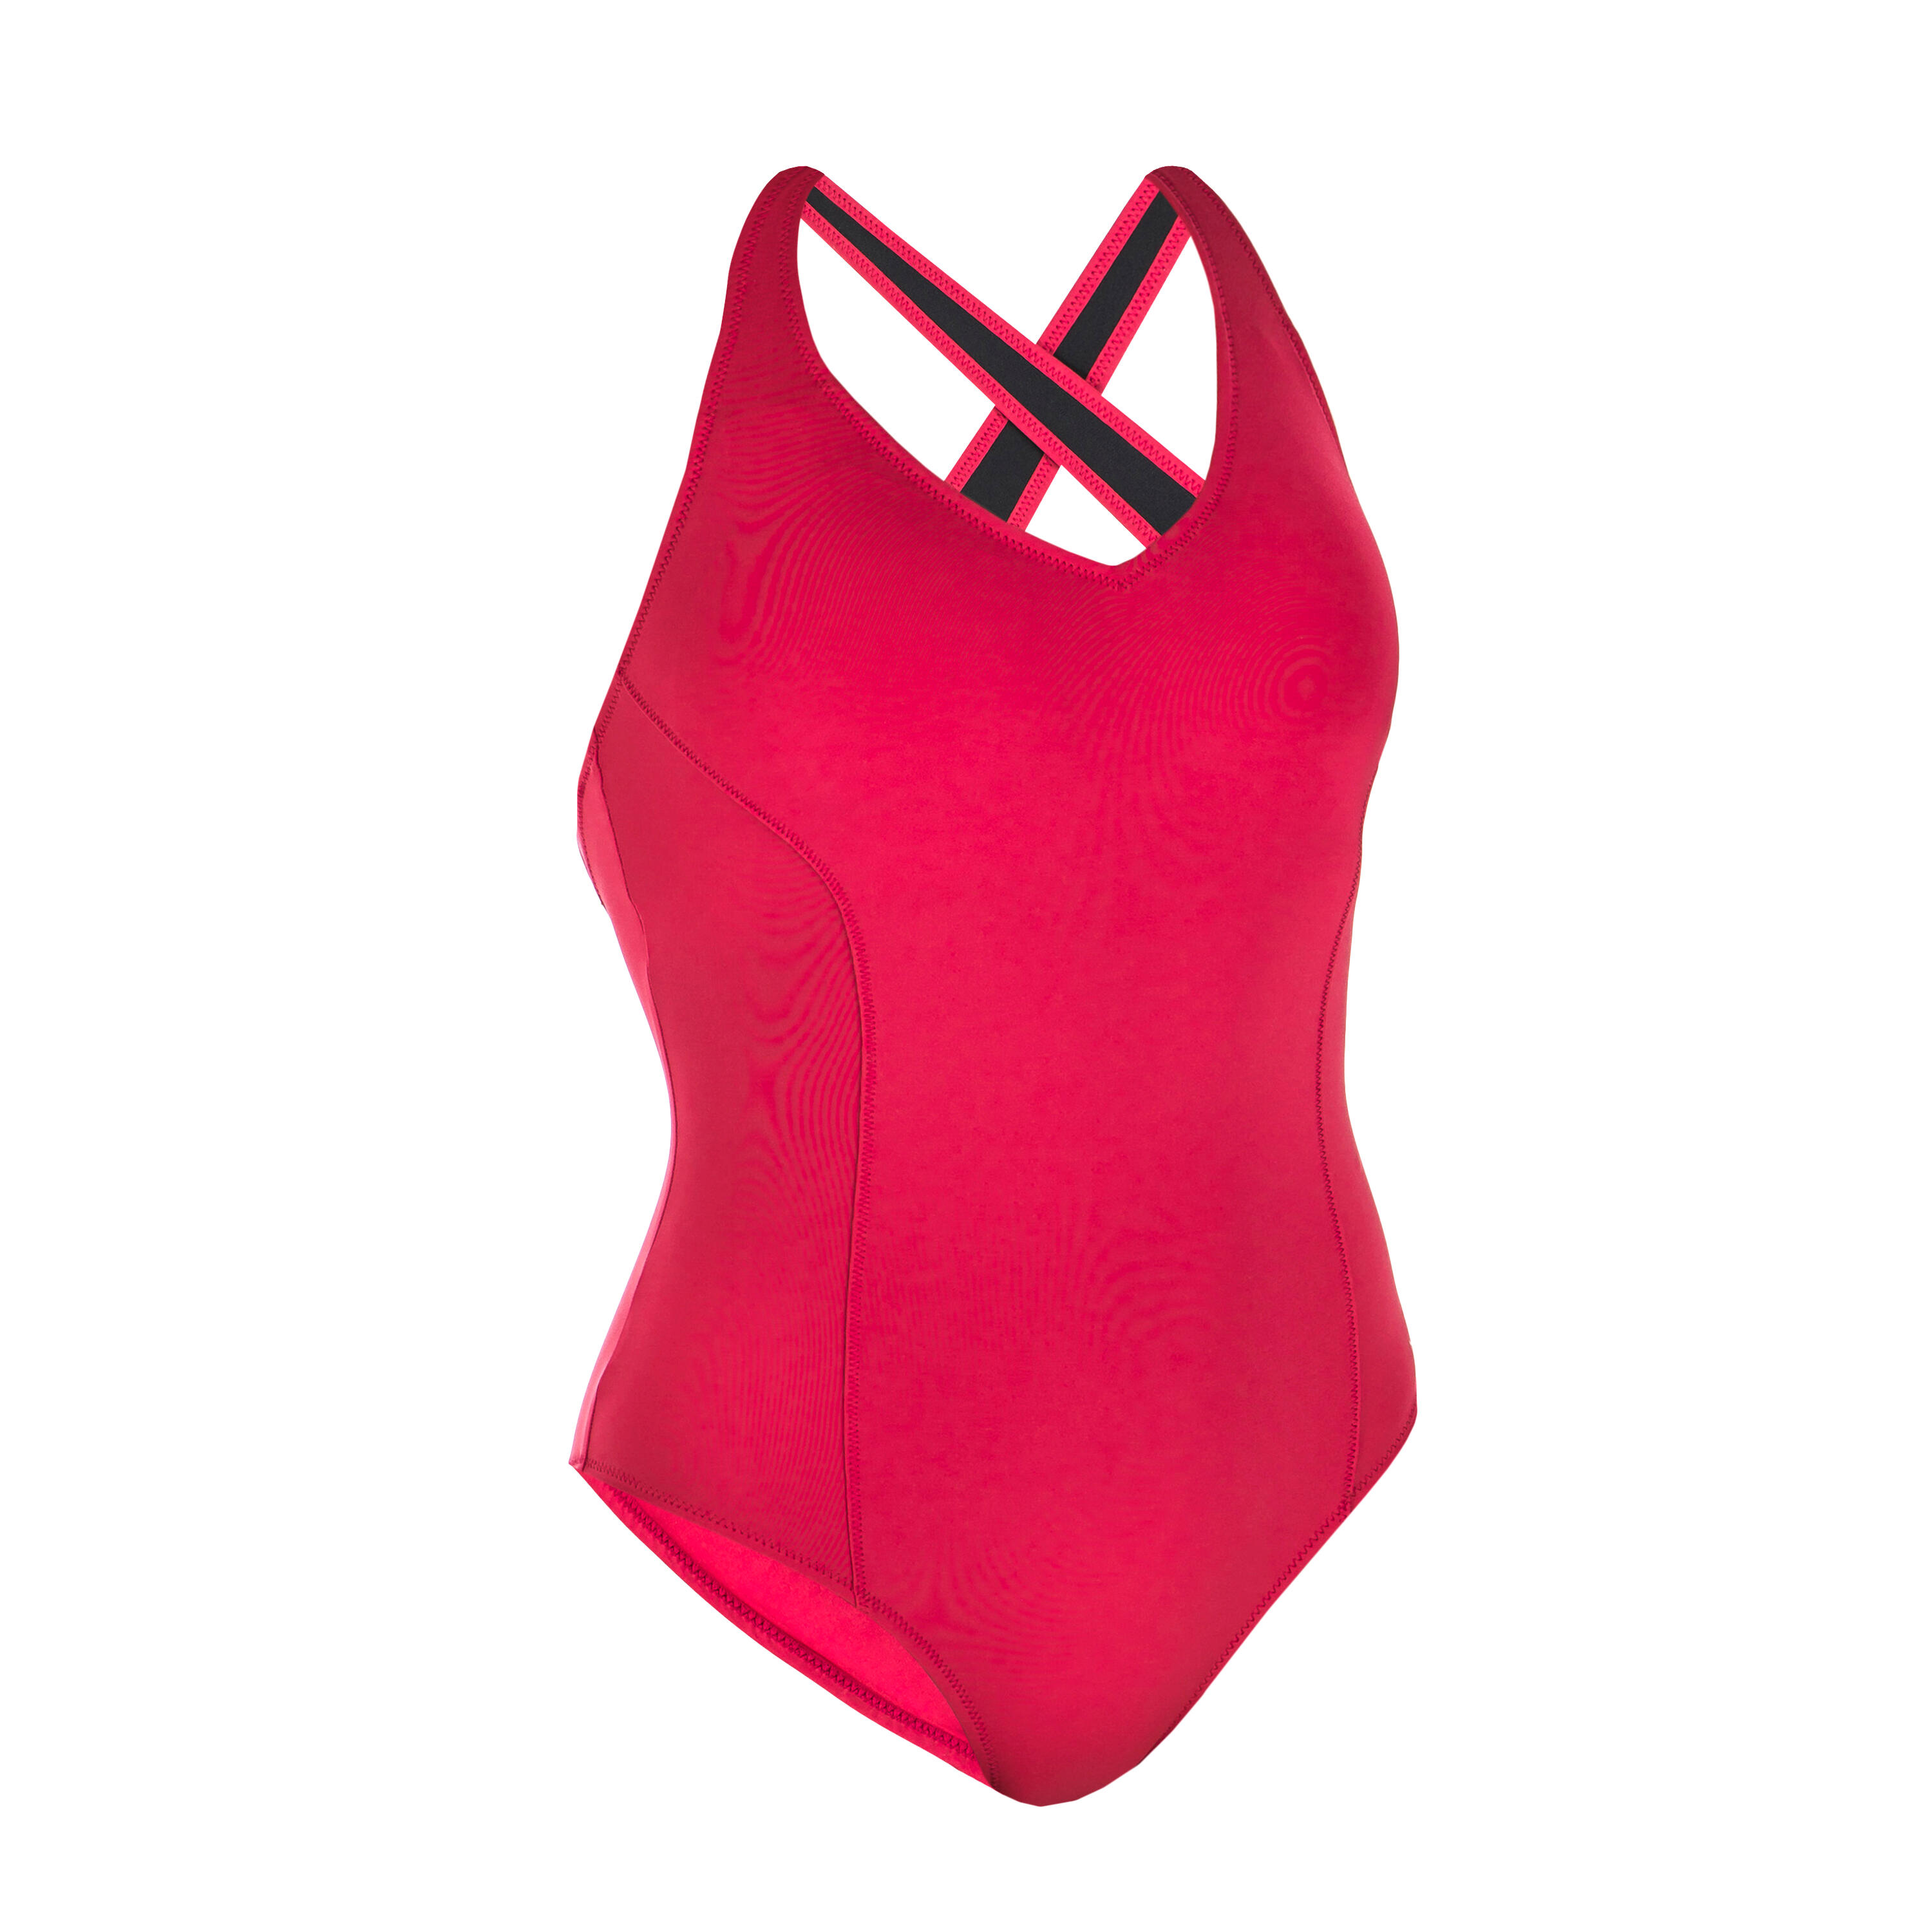 Women’s 1-piece Swimsuit Pearl Terracotta Red 8/8